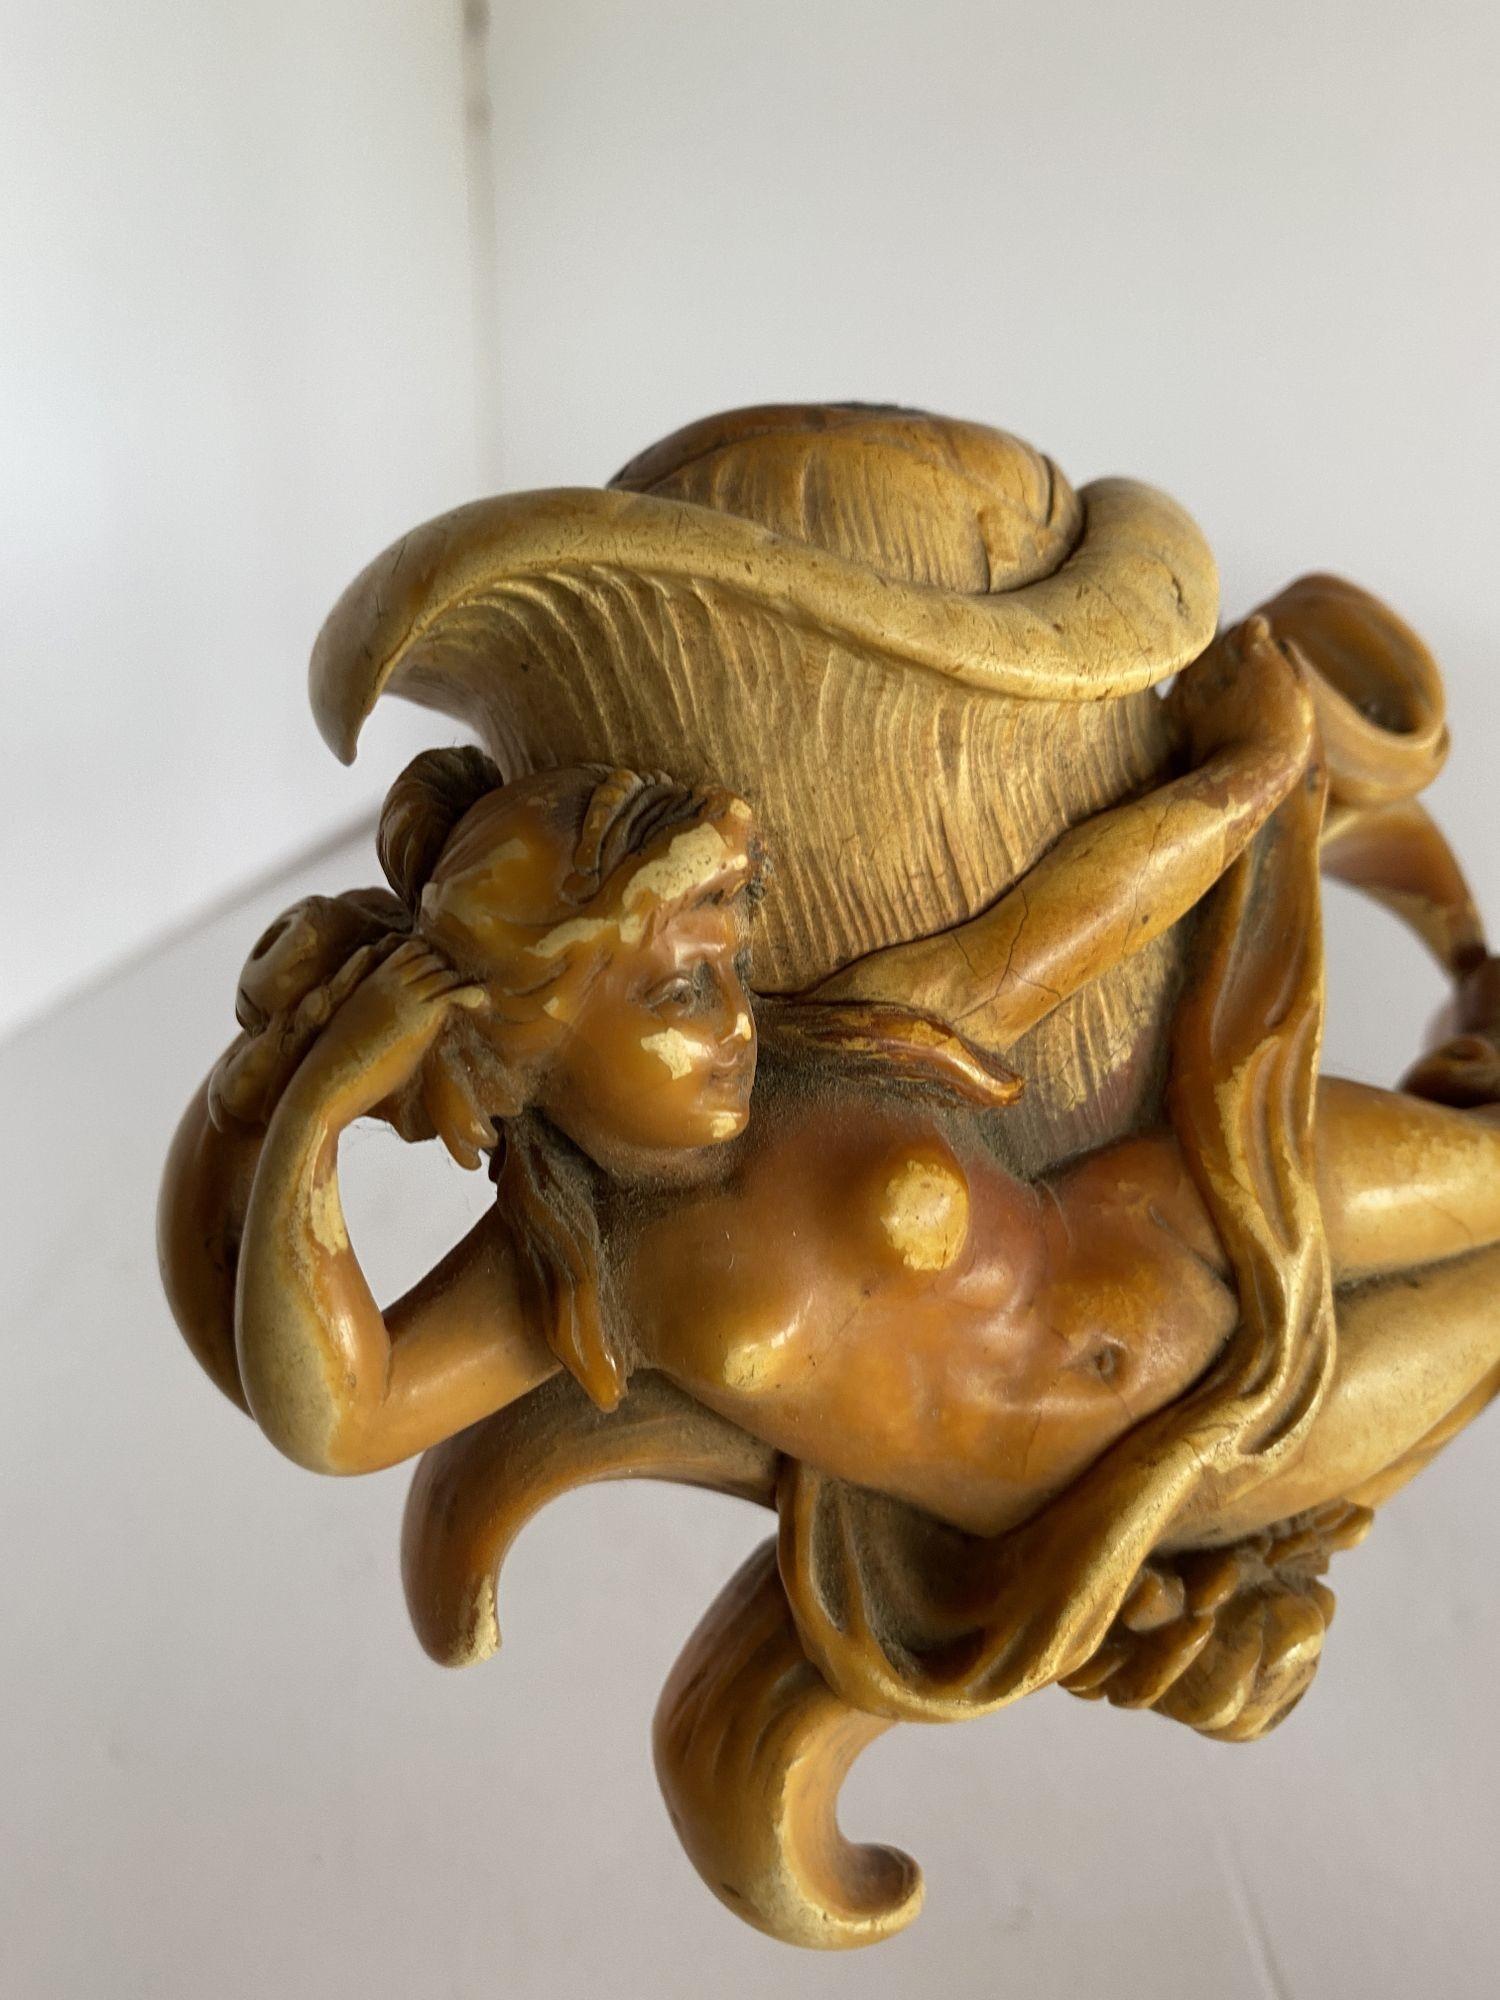 Rare pipe en écume de mer sculptée à la main d'une déesse nue, dans son étui.
 
Date d'environ 1890.
 